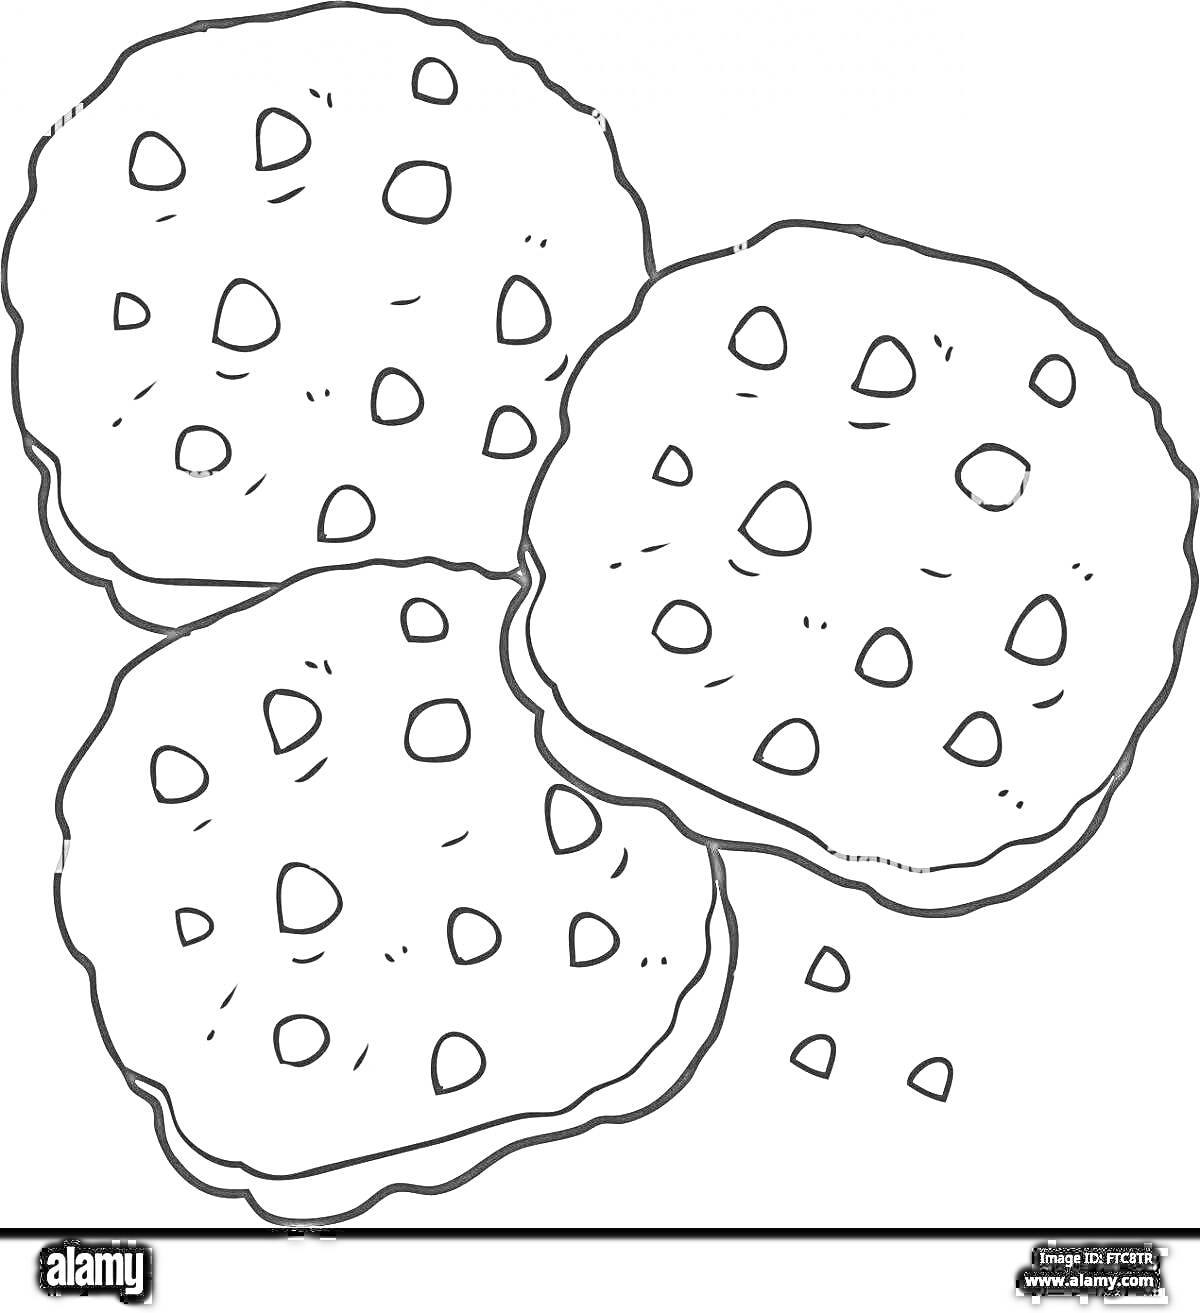 Раскраска Три печенья с кусочками шоколада и крошками